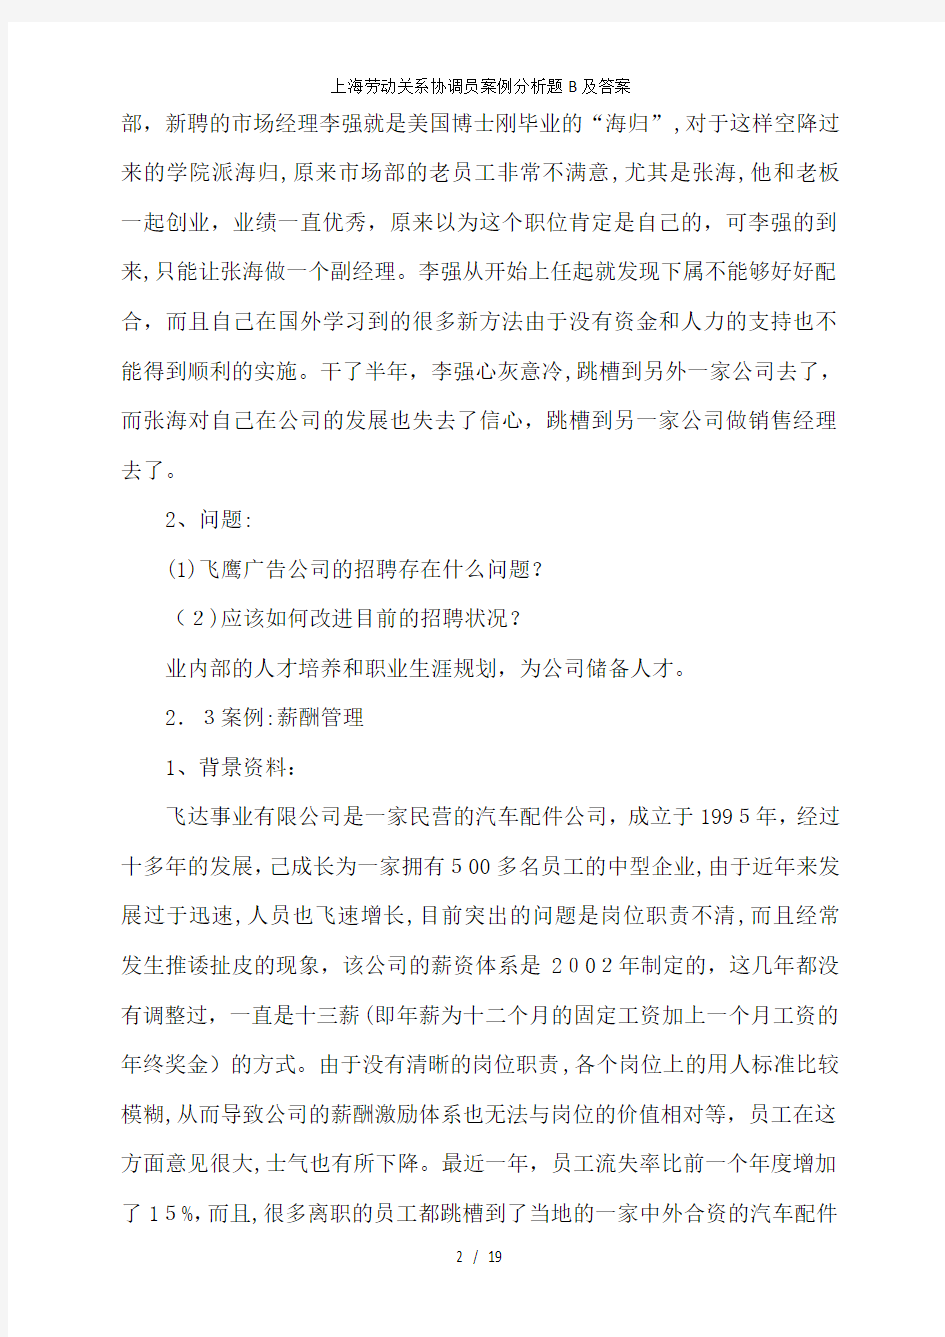 上海劳动关系协调员案例分析题B及答案